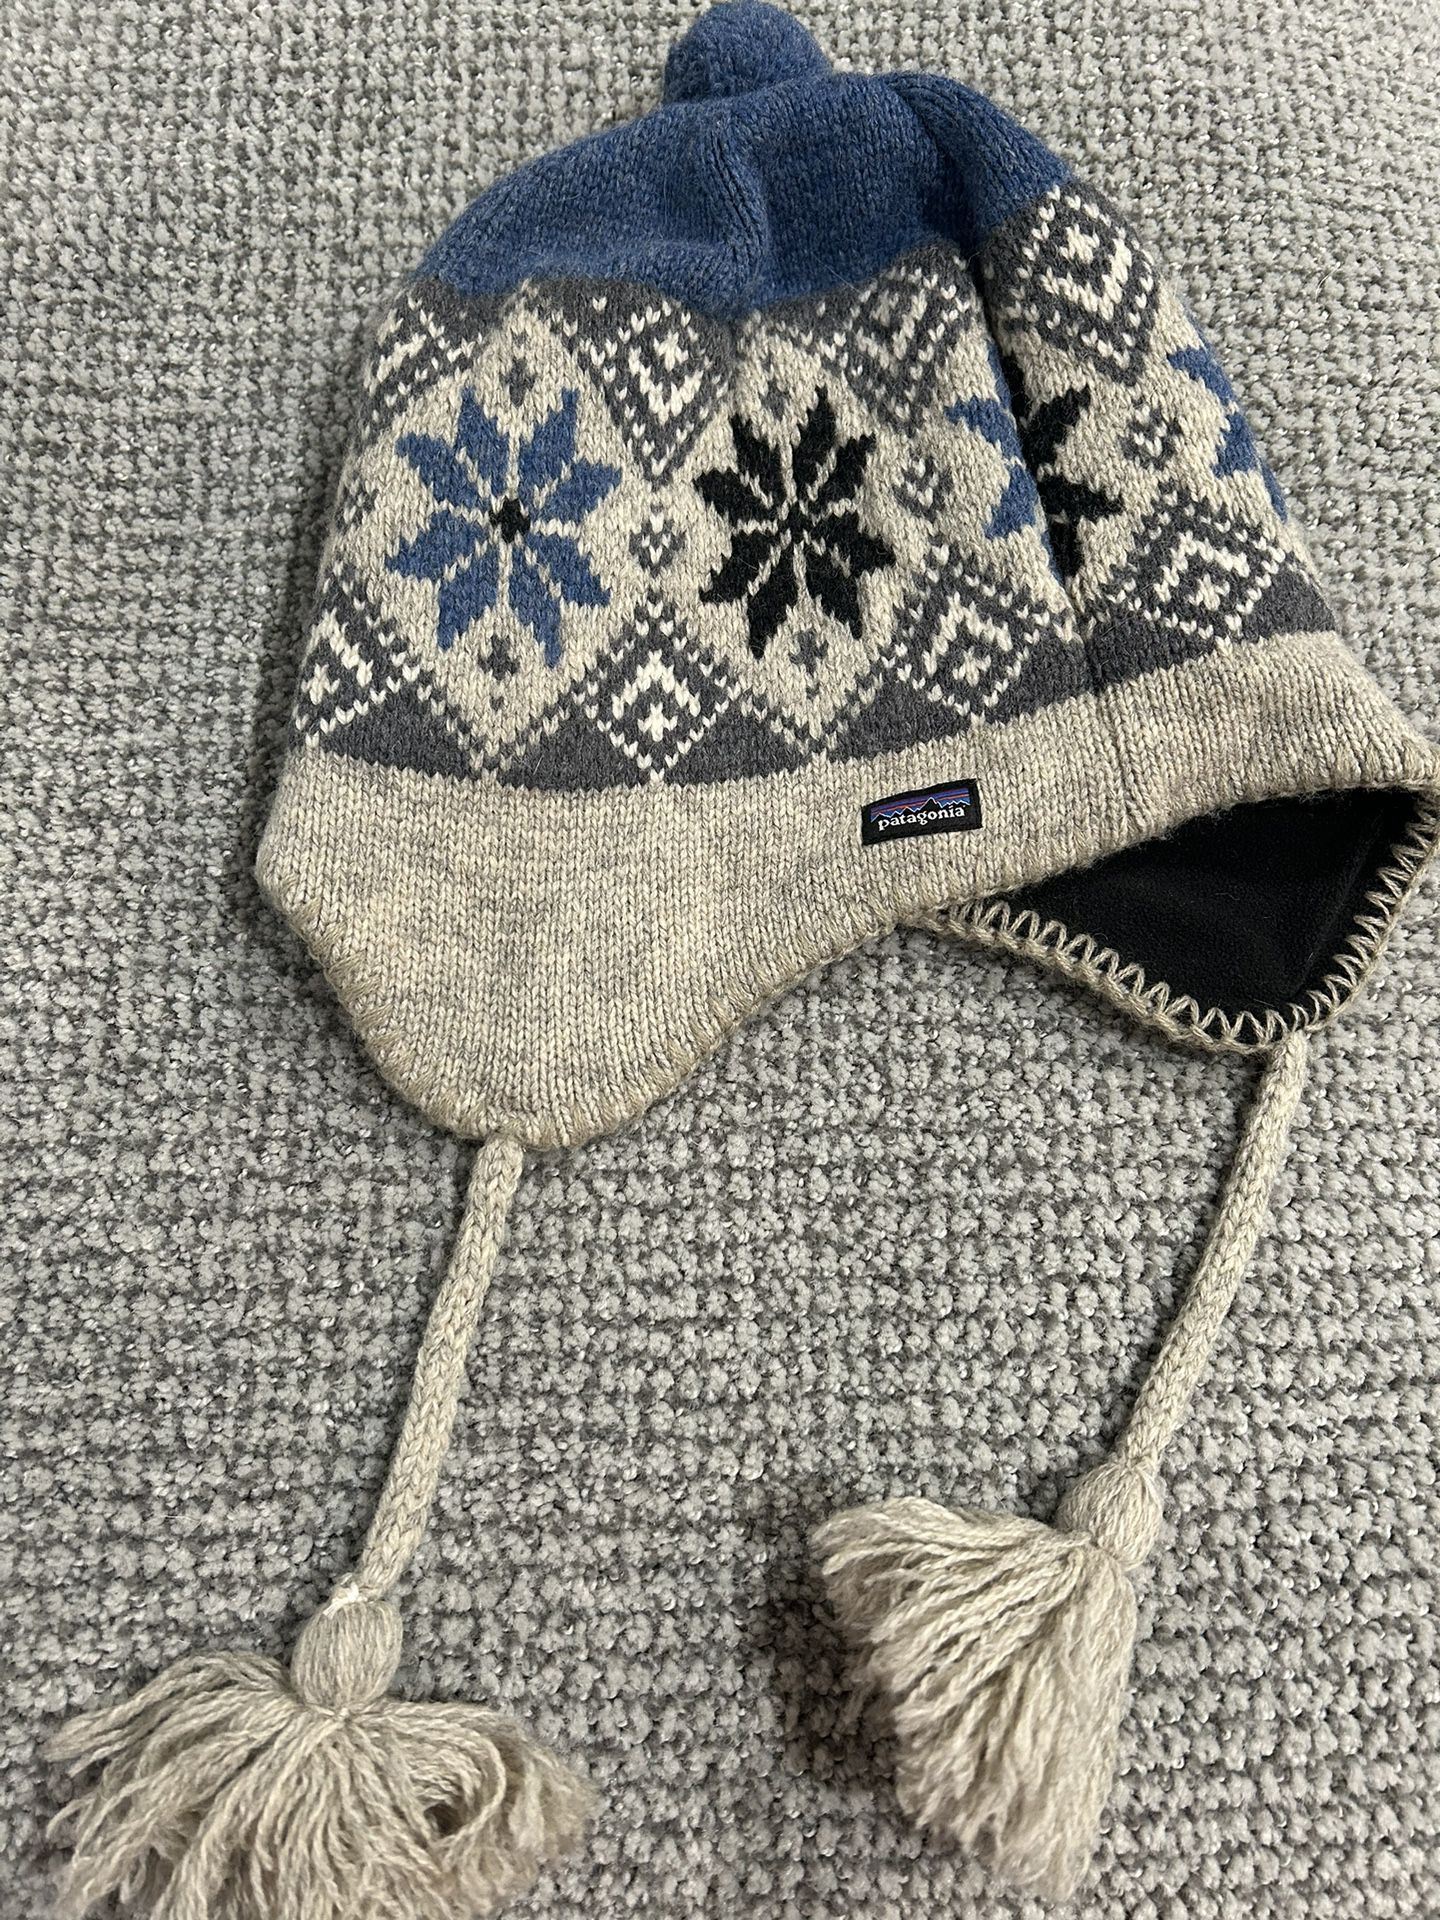 Patagonia Winter Knit Hat